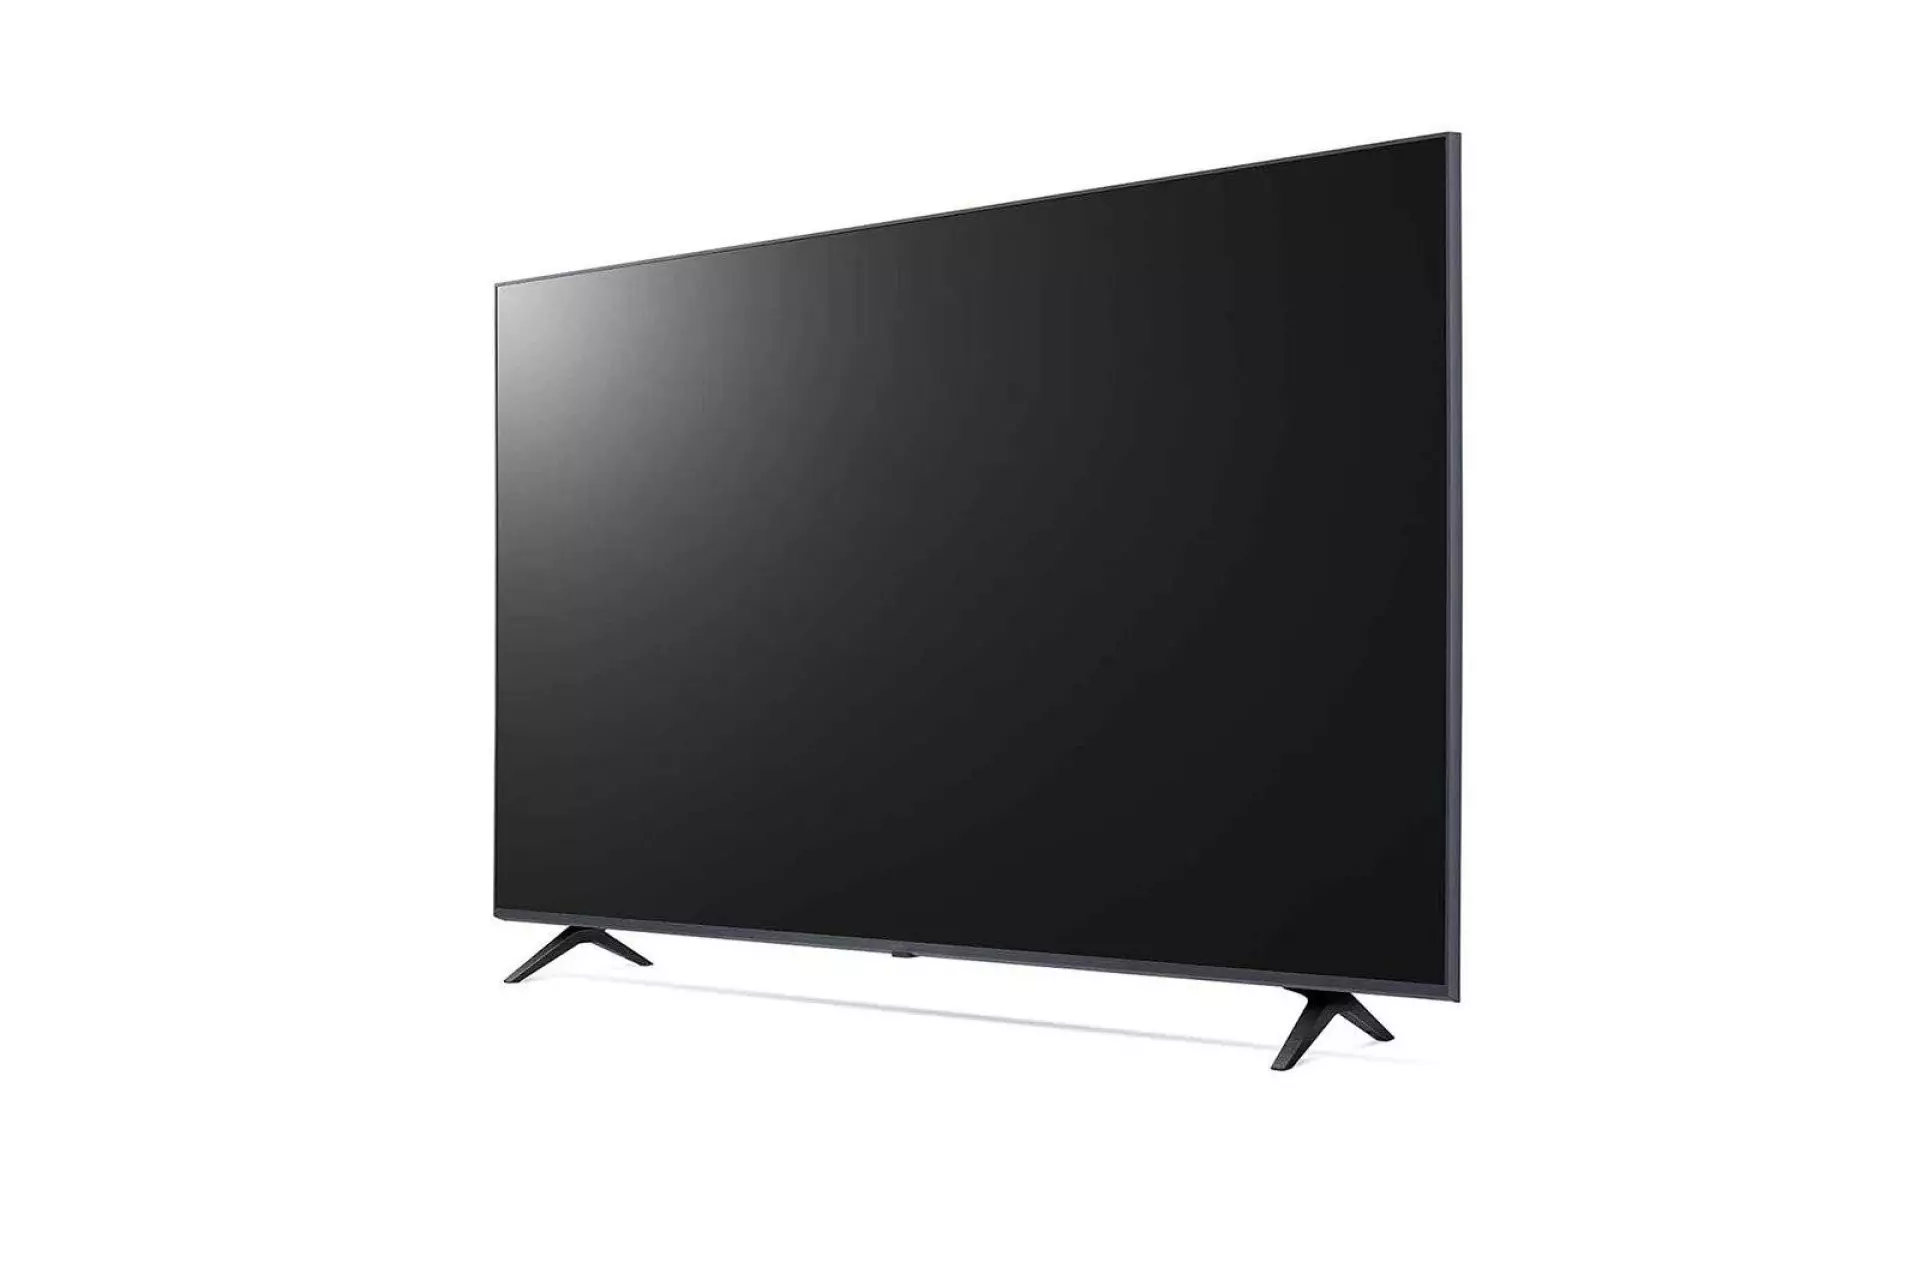 LG TV LED 50UP75003LF